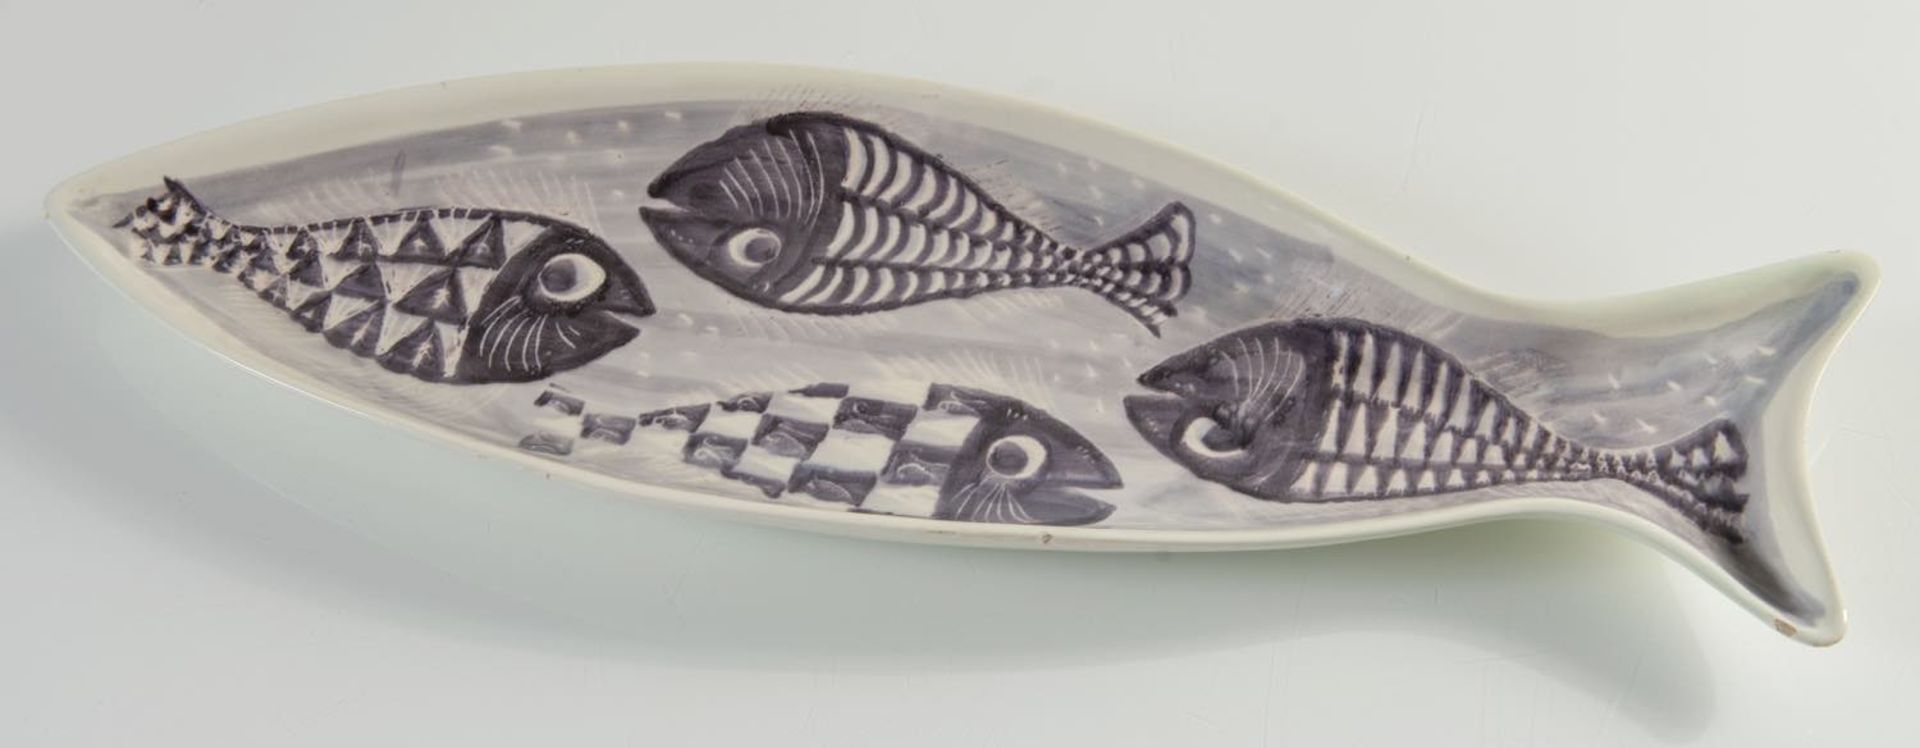 Alessio Tasca, Vassoio in ceramica a forma di pesce, Vicenza, Anni ‘50/'60.Dipinto a mano in - Bild 2 aus 2